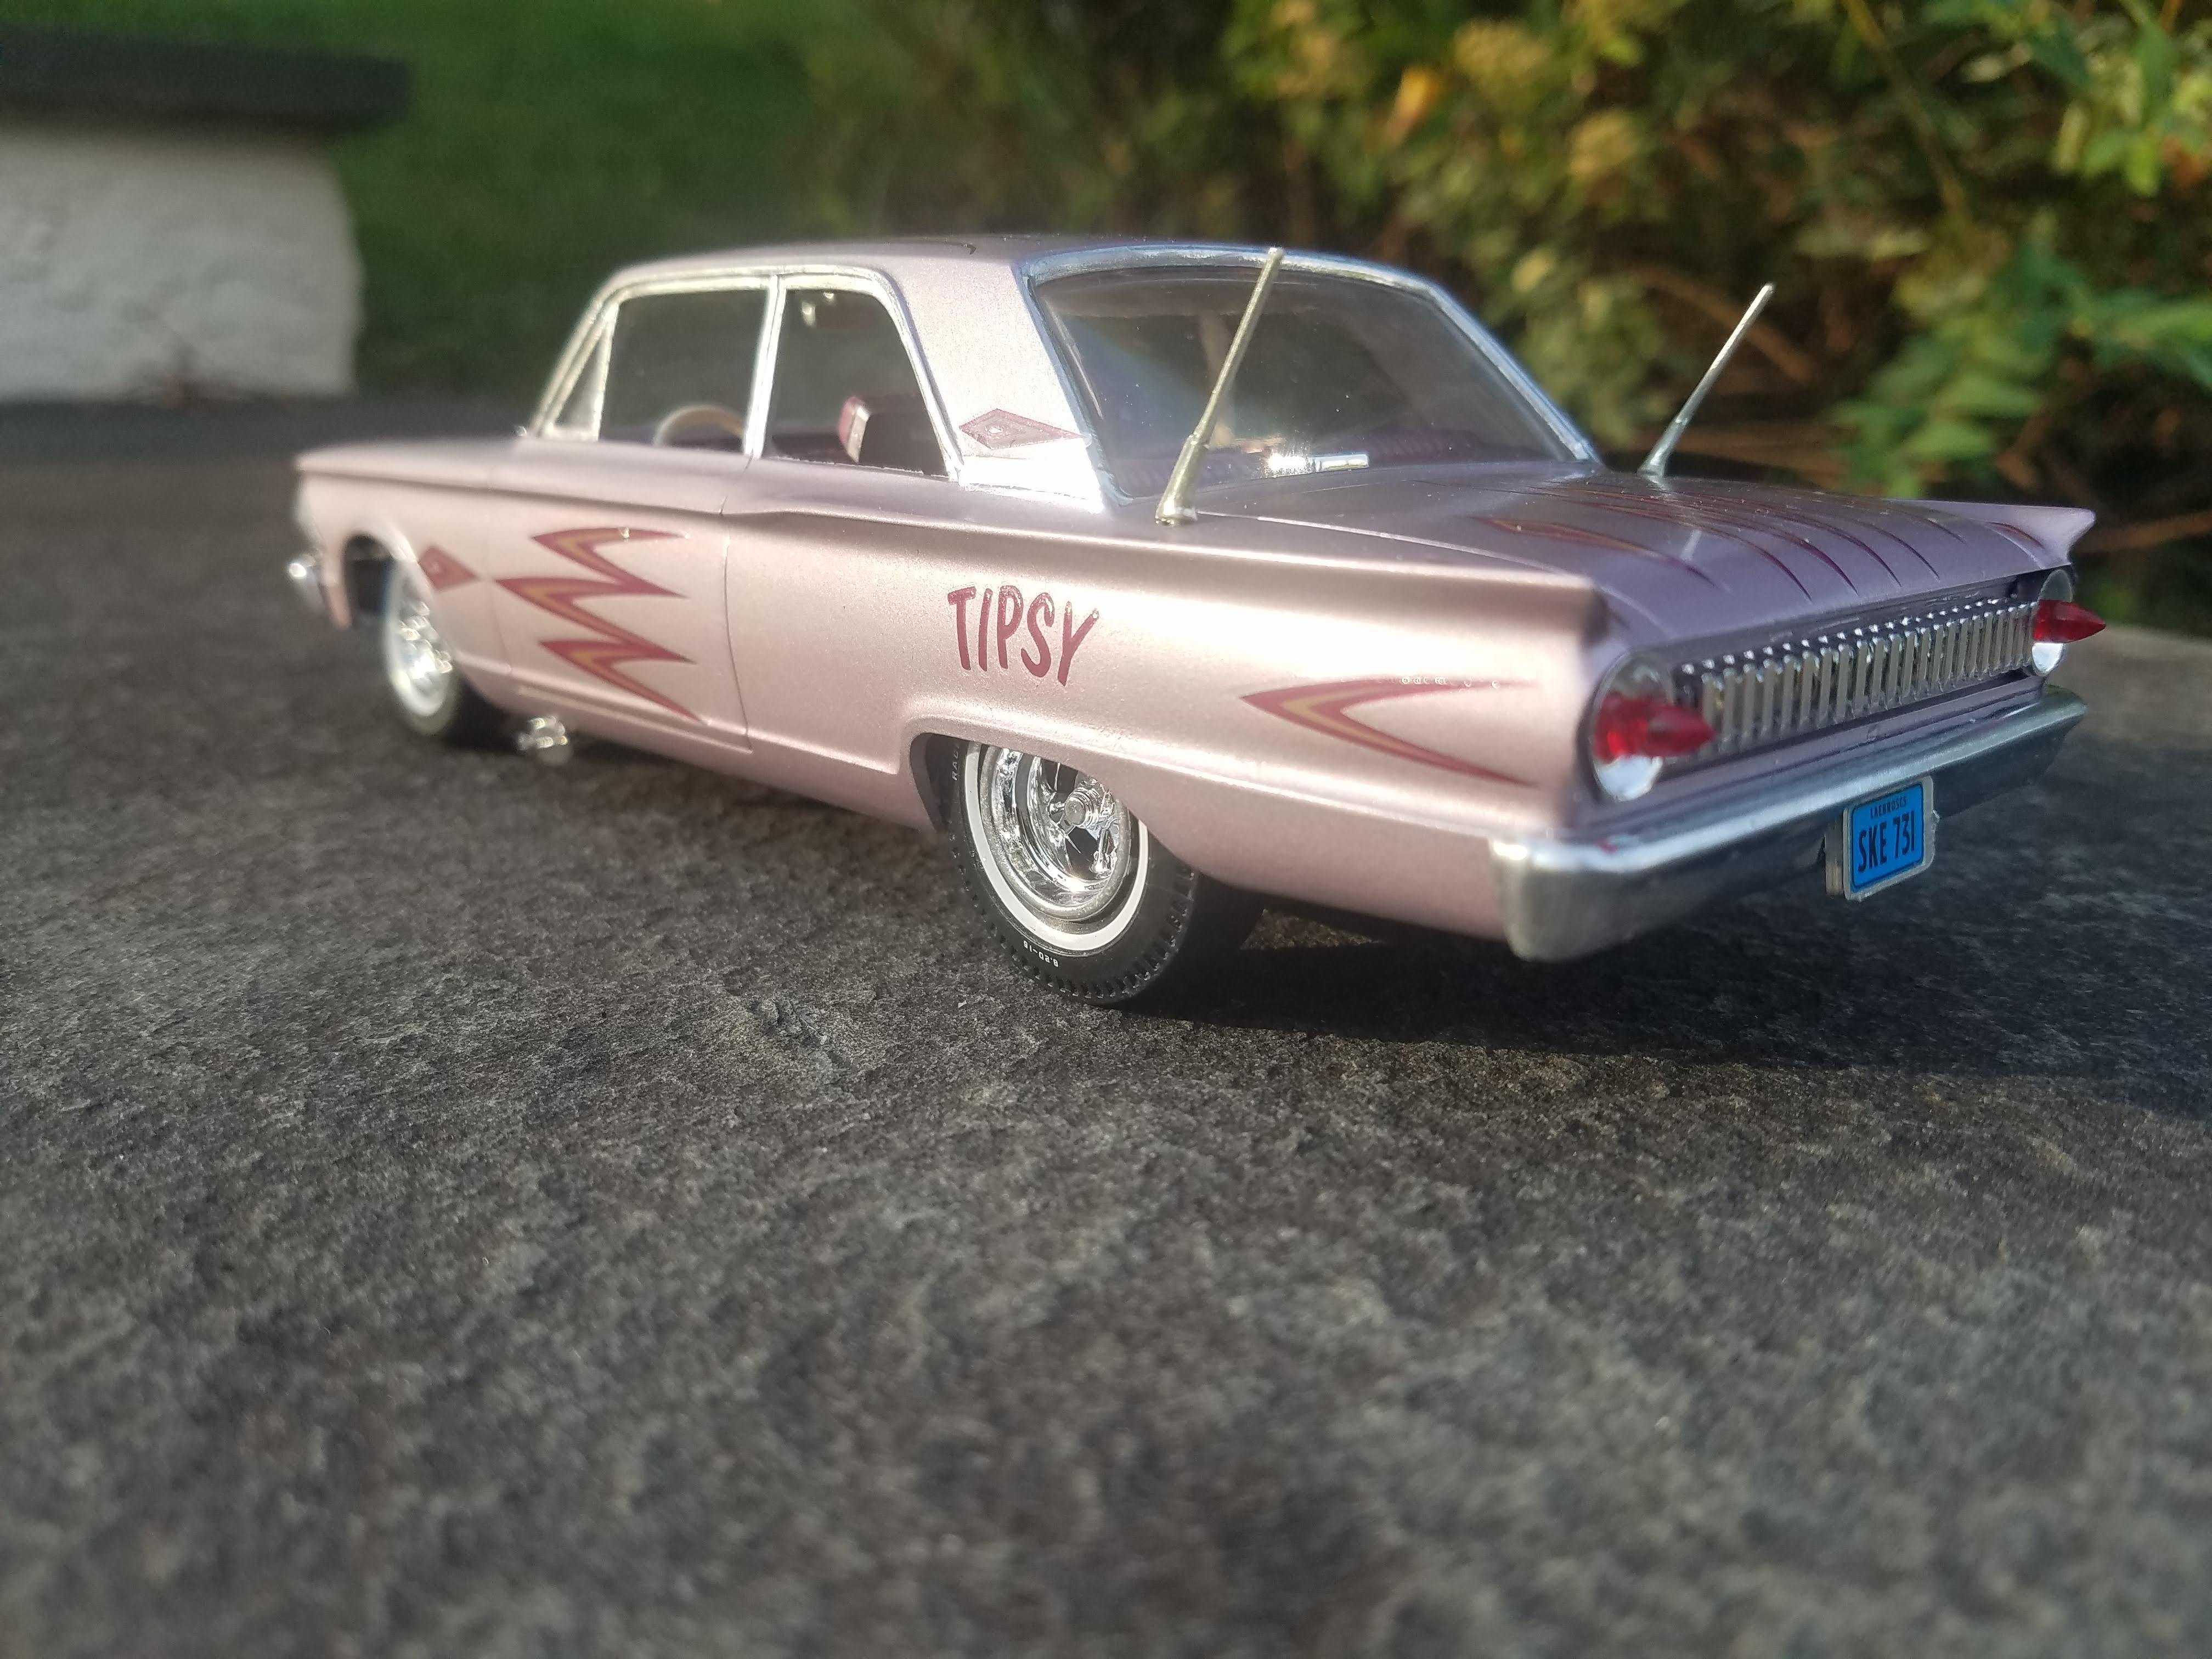 1964 Vintage model car paint Set Pactra body shop